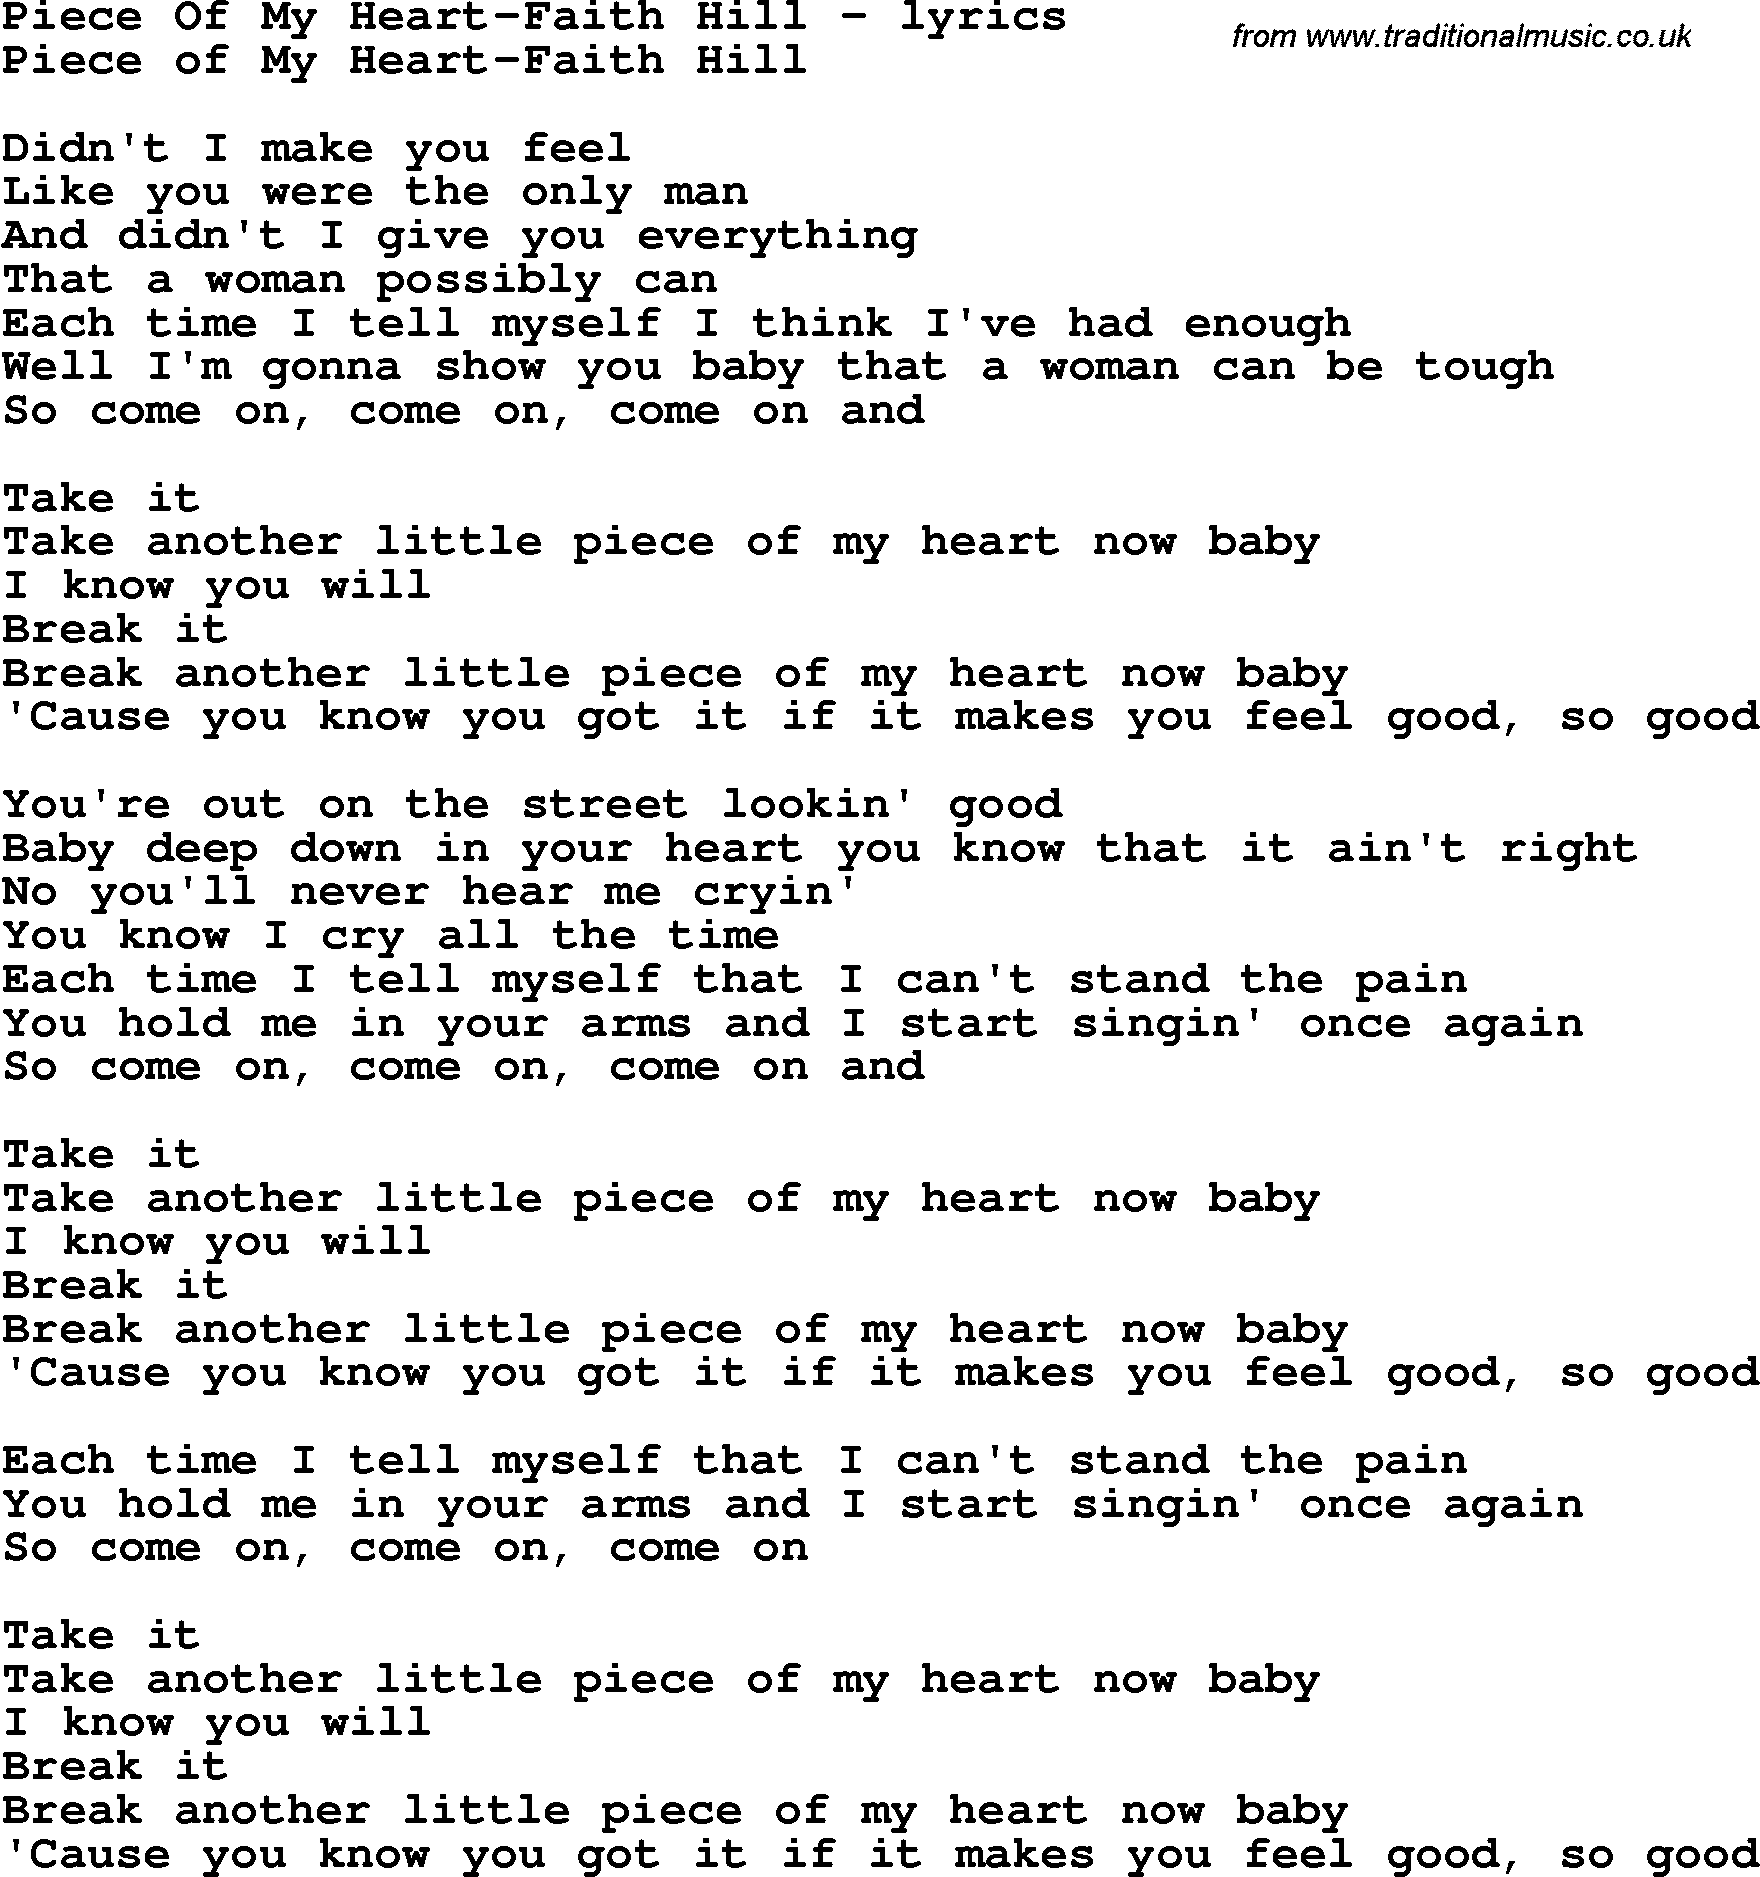 Love Song Lyrics for:Piece Of My Heart-Faith Hill